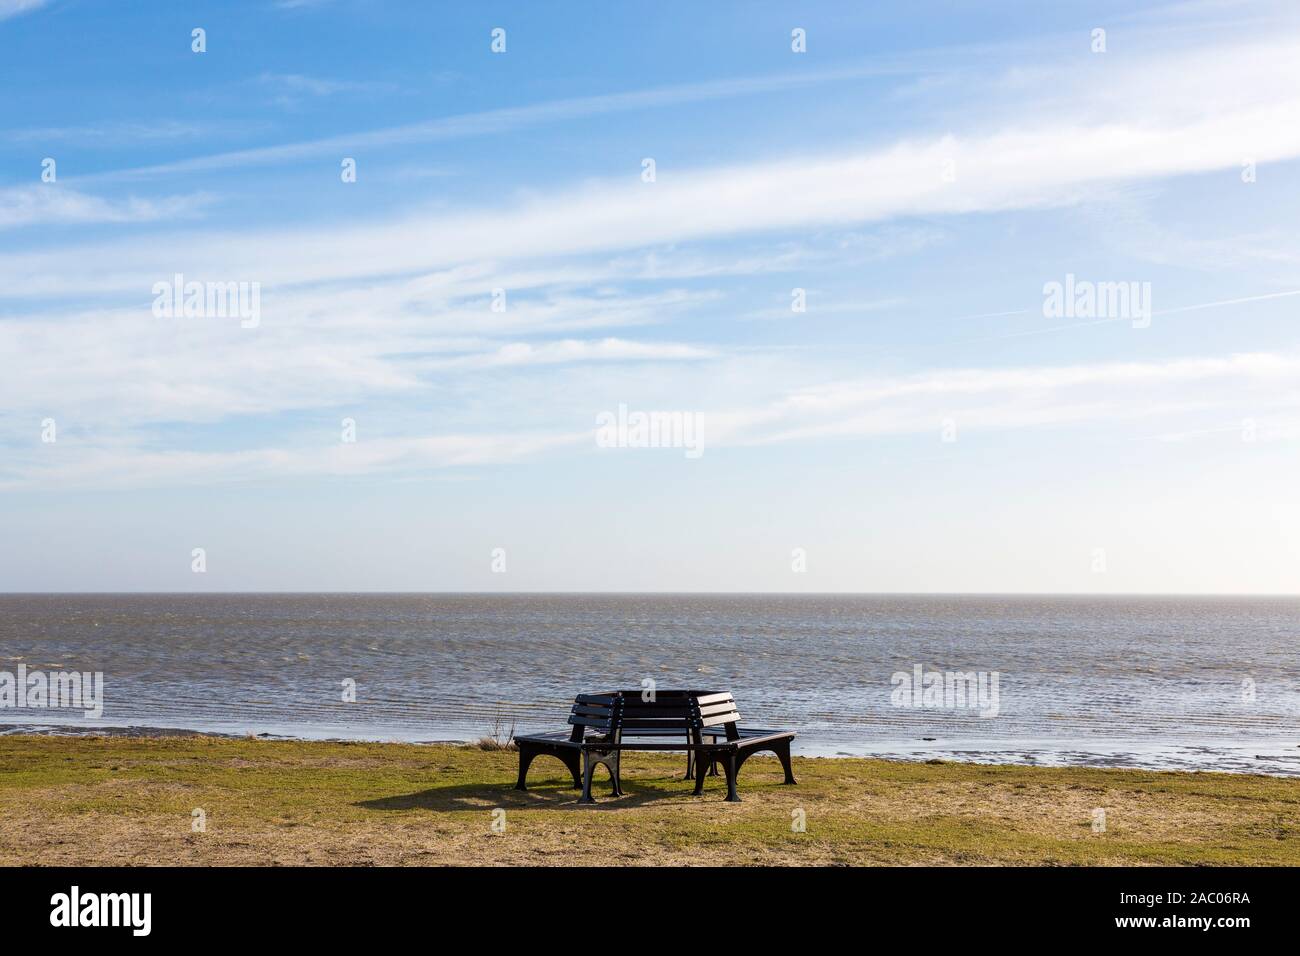 Sitzbaenke am Strand, Wattenmeer, Munkmarsch, Sylt Foto Stock